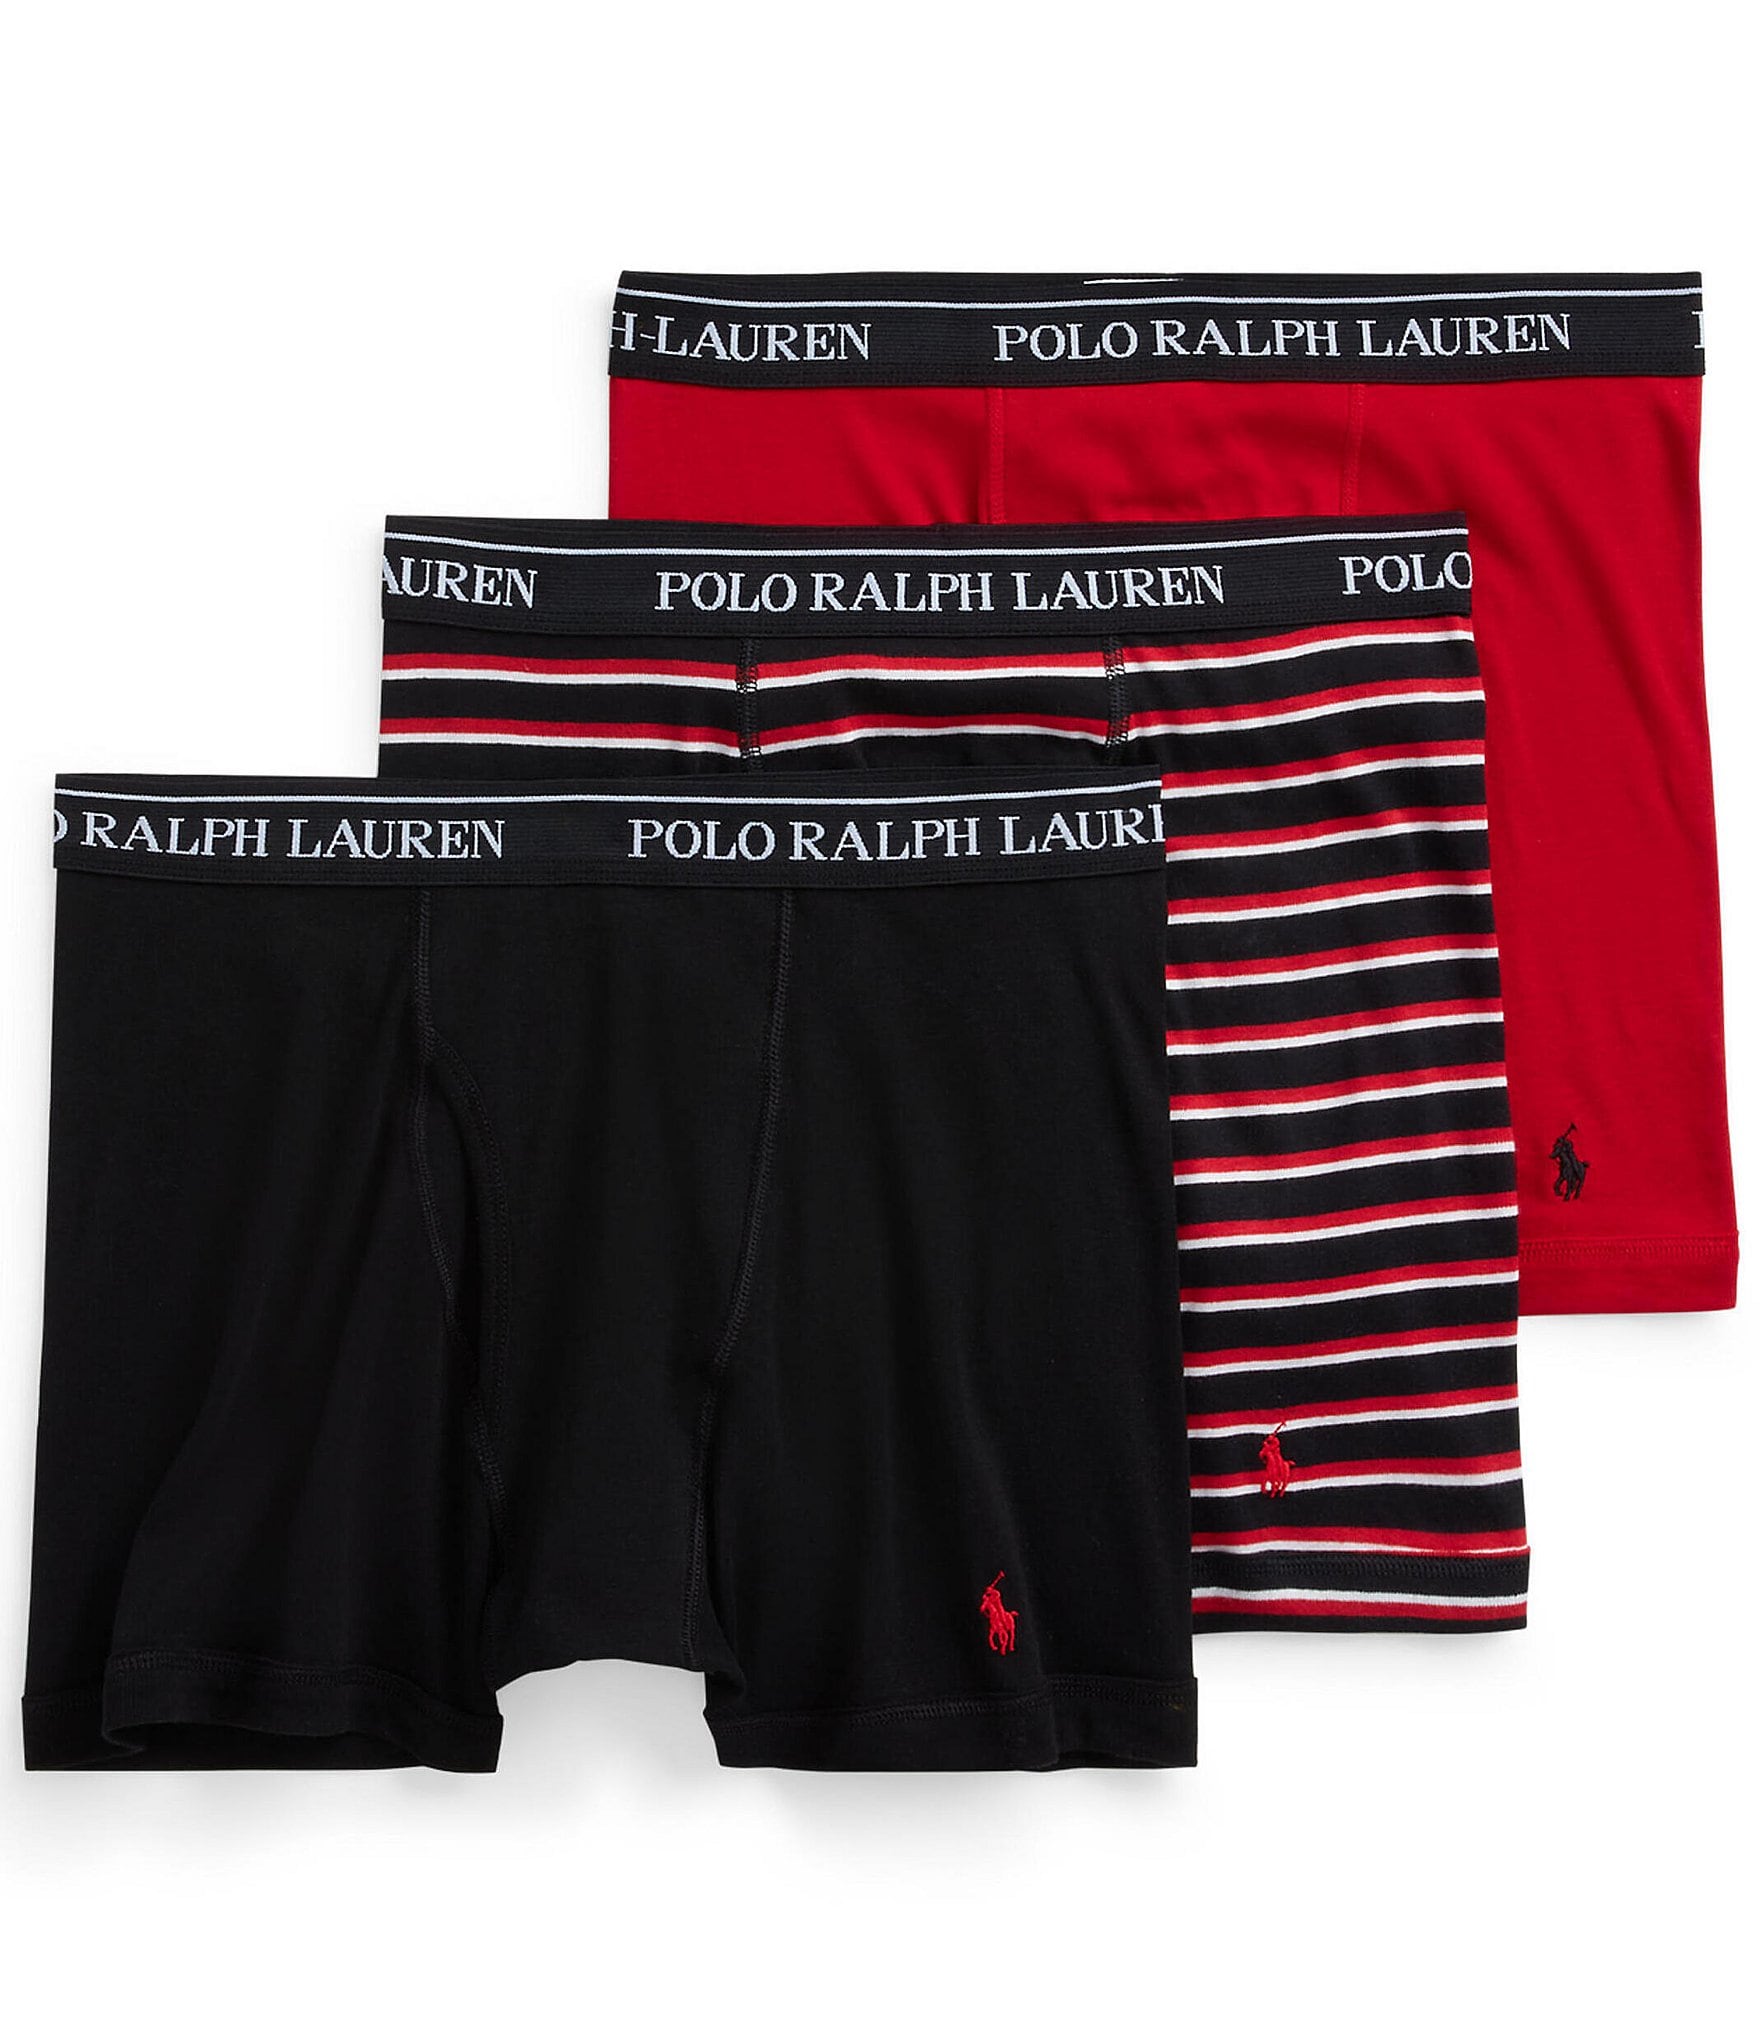 Polo Ralph Lauren 6 PACK Boxer Briefs Orange Navy Blue Classic Underwear  SALE !! 